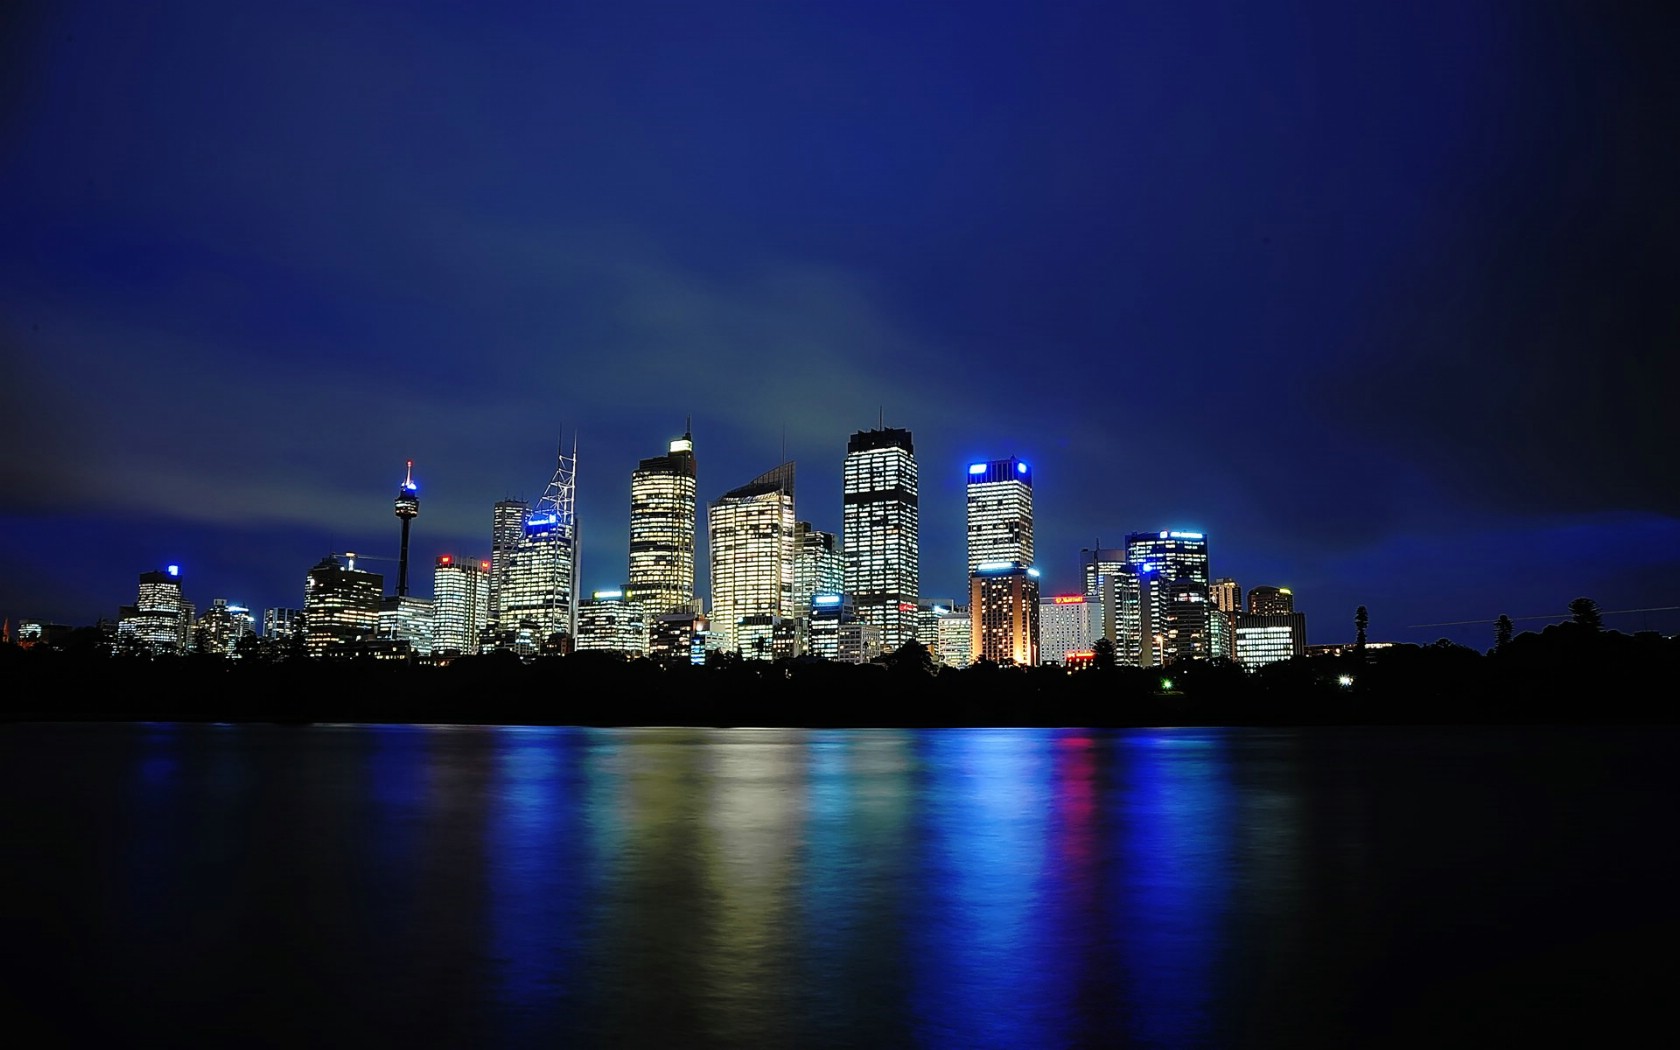 壁纸1680x1050HDR 澳洲悉尼 海上夜景摄影壁纸壁纸 澳洲悉尼风景摄影集壁纸 澳洲悉尼风景摄影集图片 澳洲悉尼风景摄影集素材 人文壁纸 人文图库 人文图片素材桌面壁纸